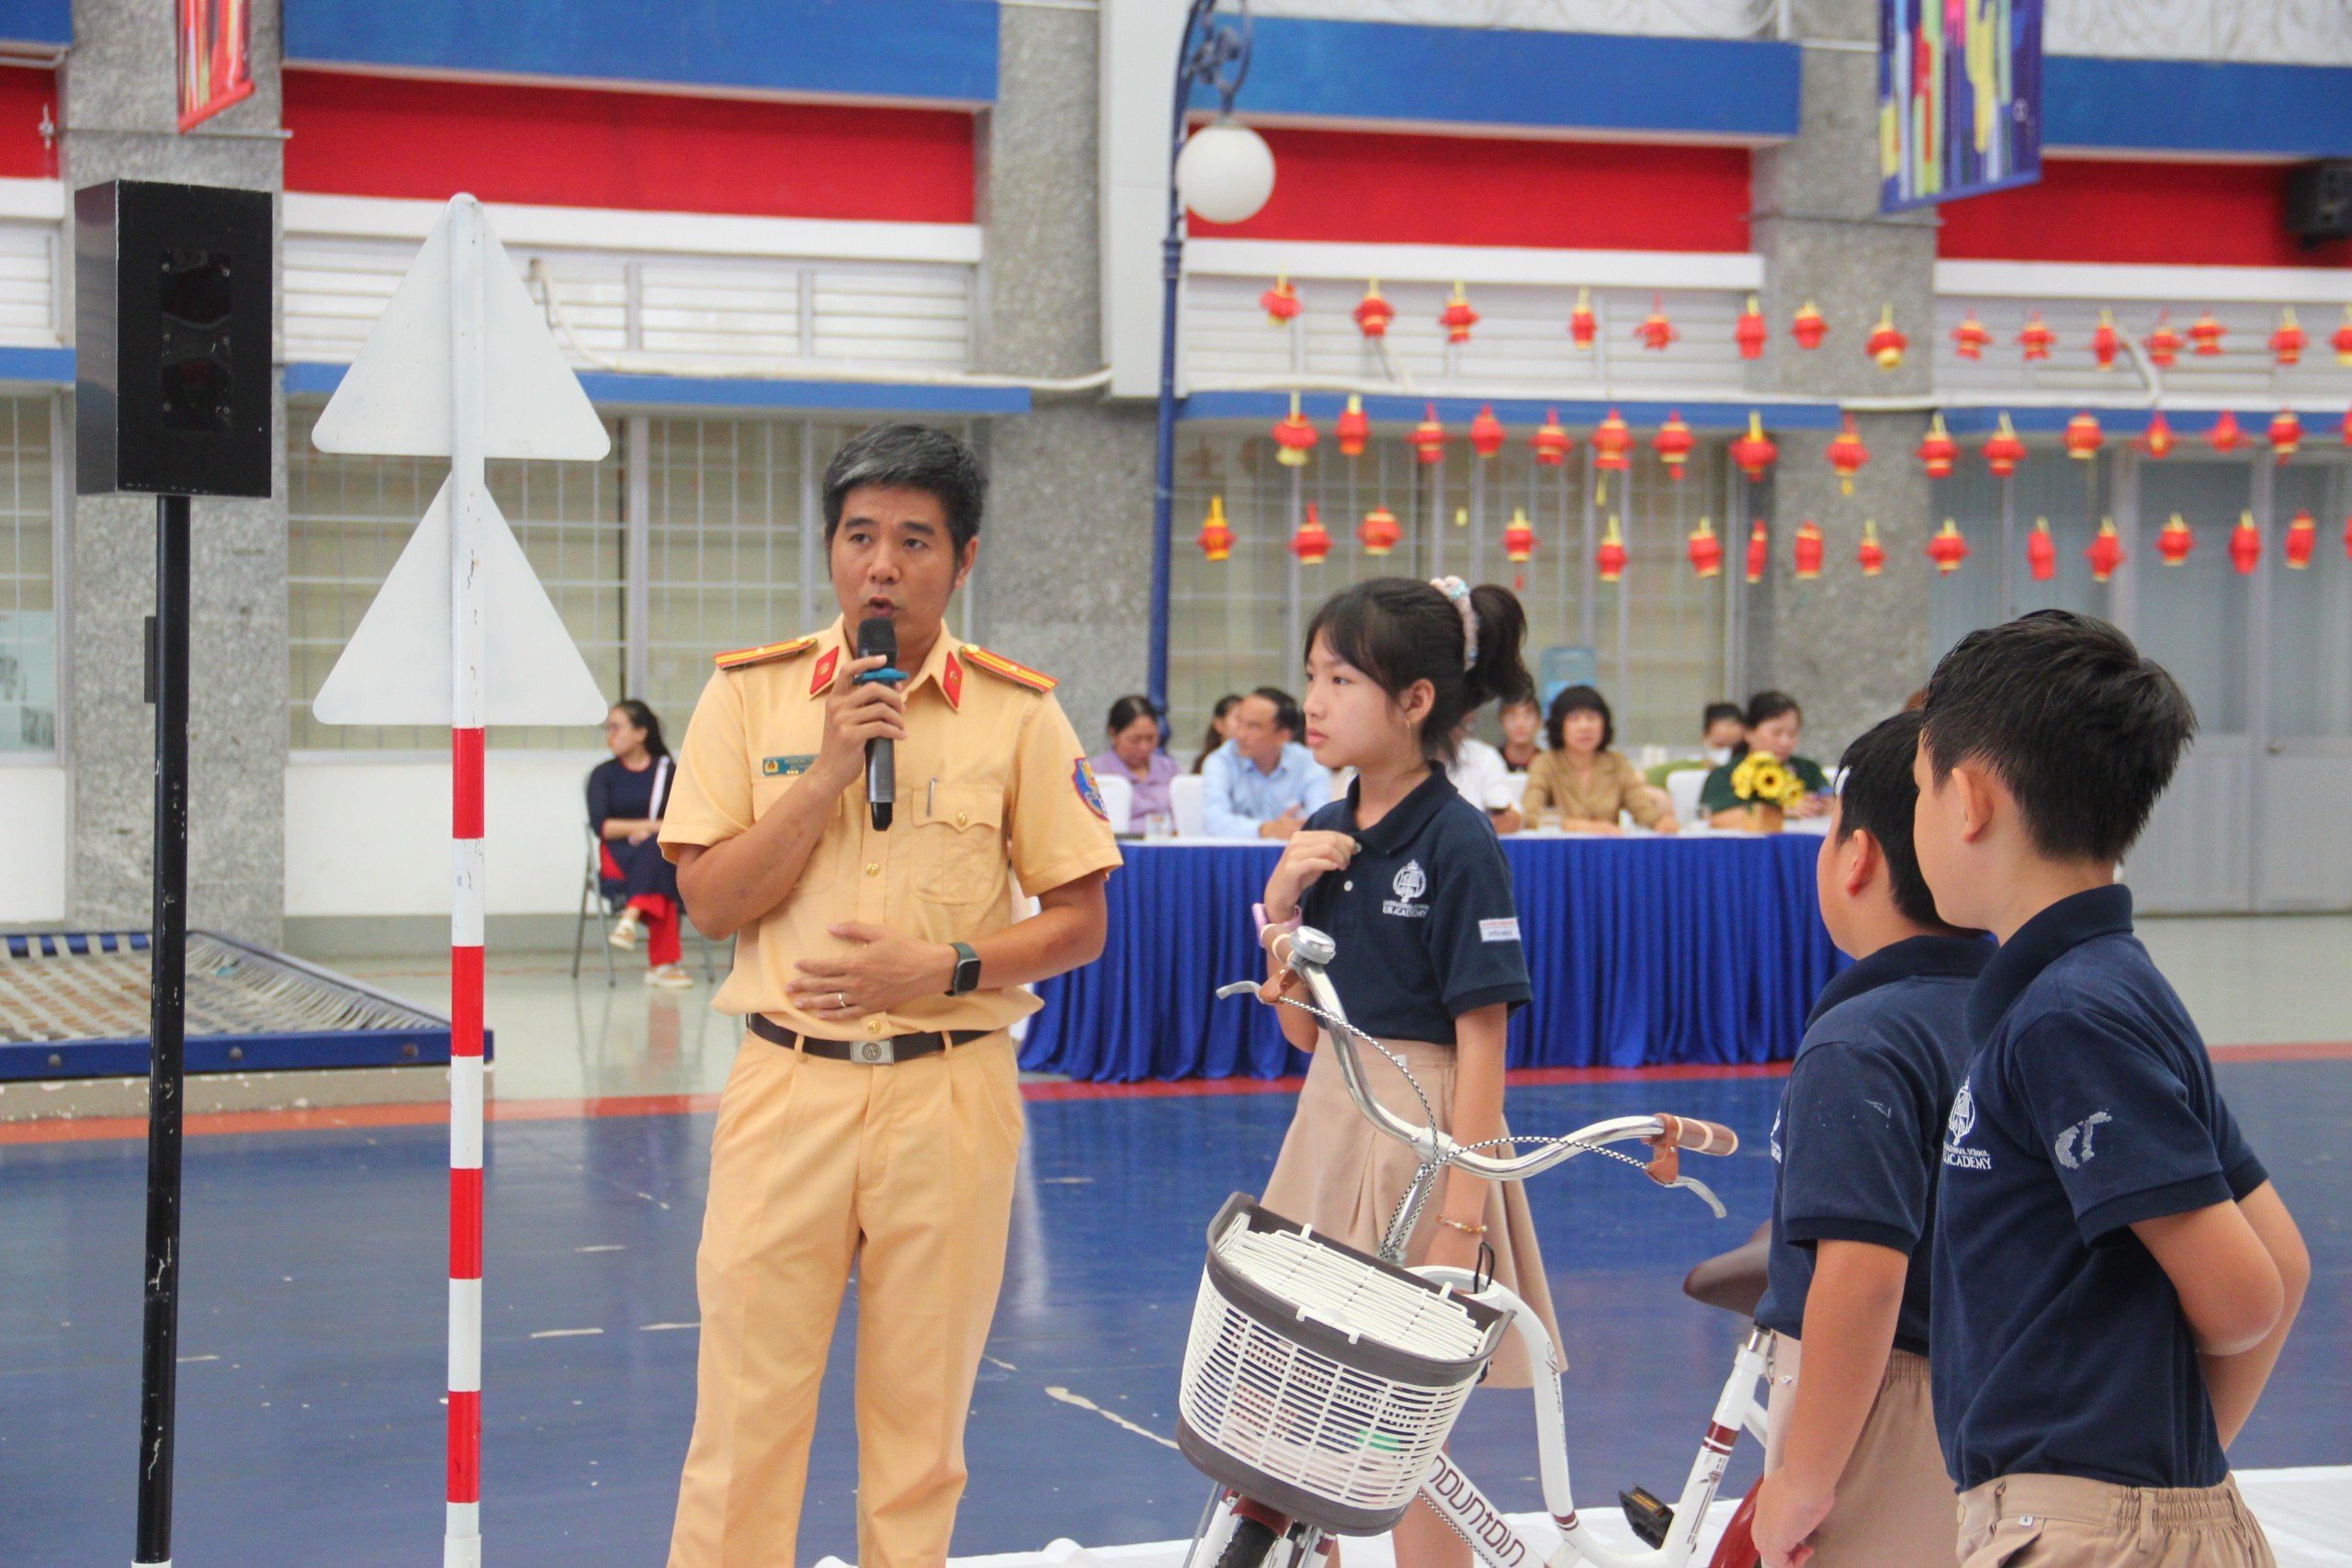 Thiếu tá Hoàng Bá Tuấn thuộc PC08 hướng dẫn kỹ năng đi xe đạp an toàn cho học sinh trường UK Academy.